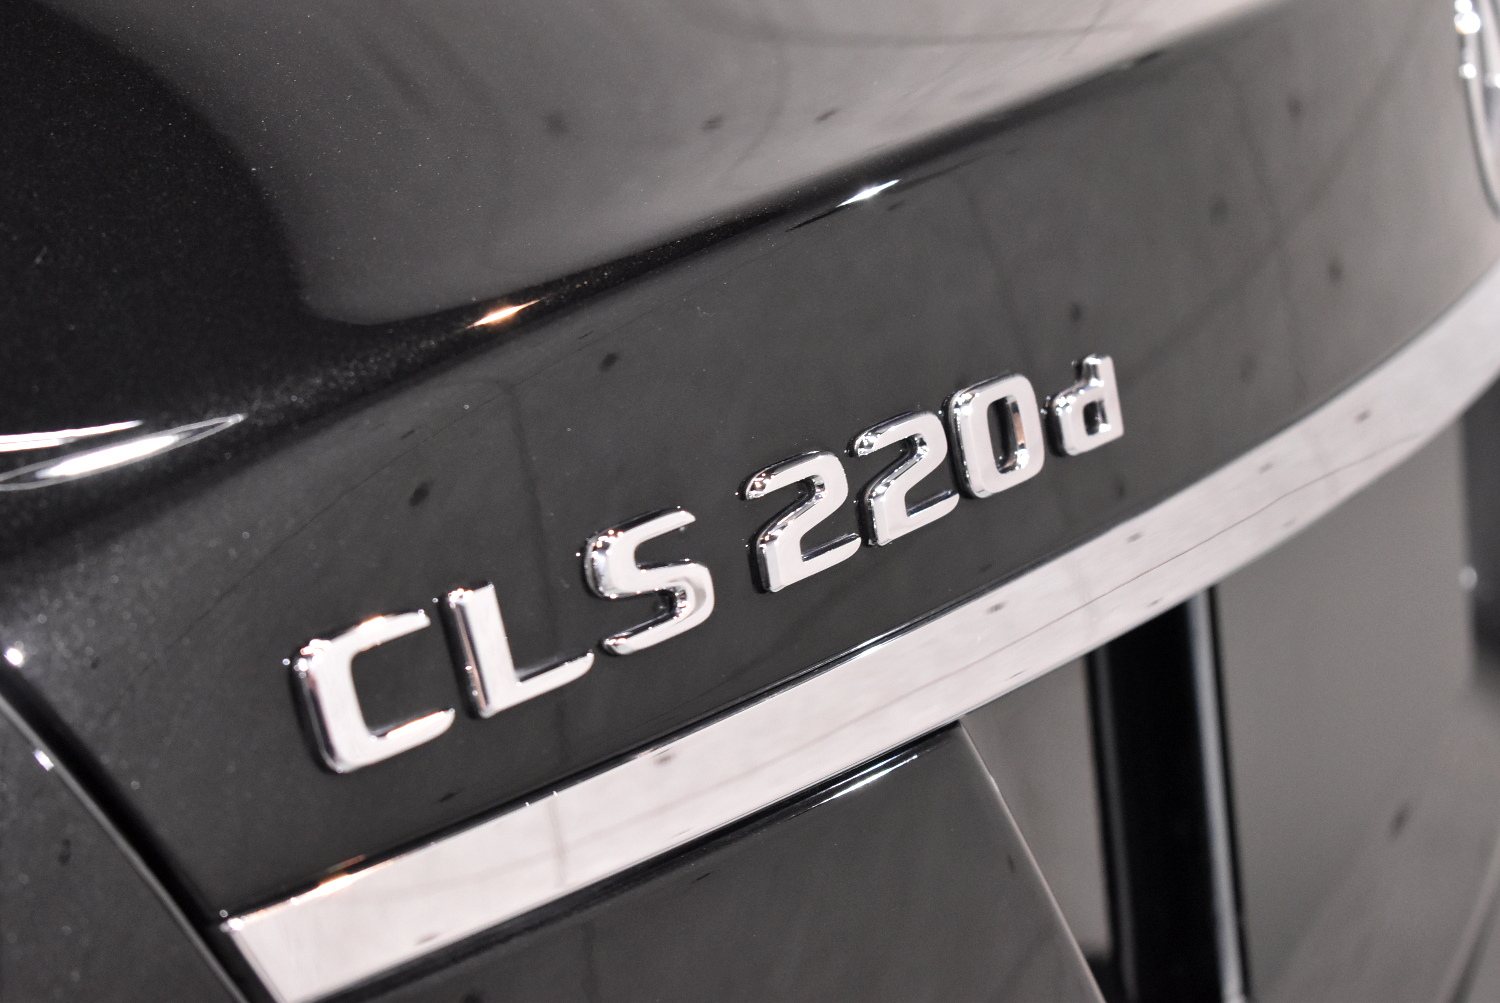 CLS220d-10